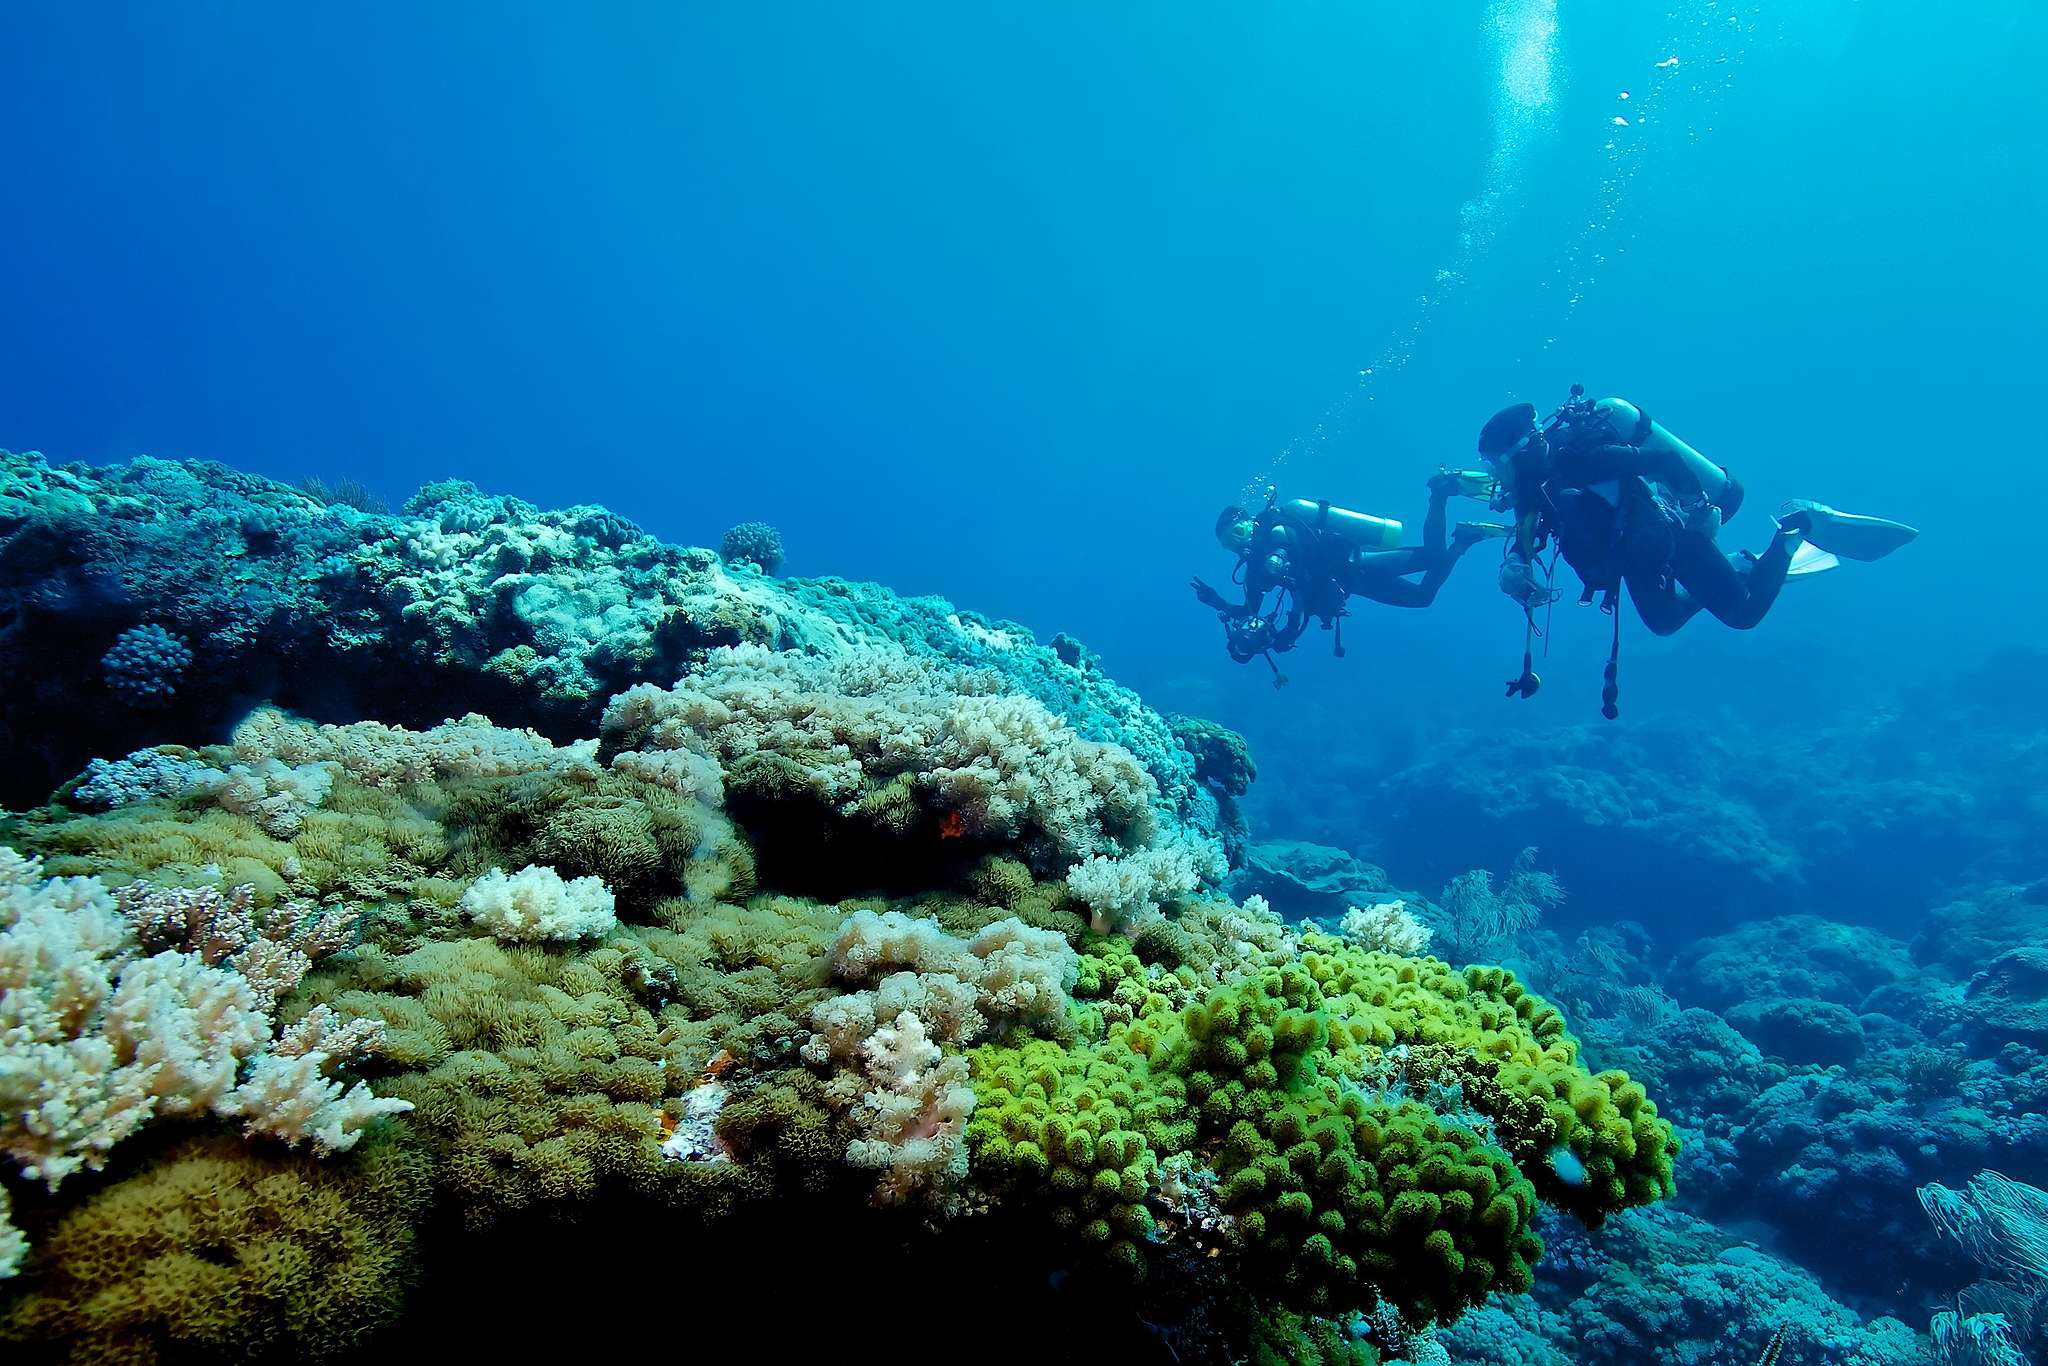 臺灣綠島擁有美麗珊瑚礁，是潛水勝地，遊客更應該愛惜珍貴生態。